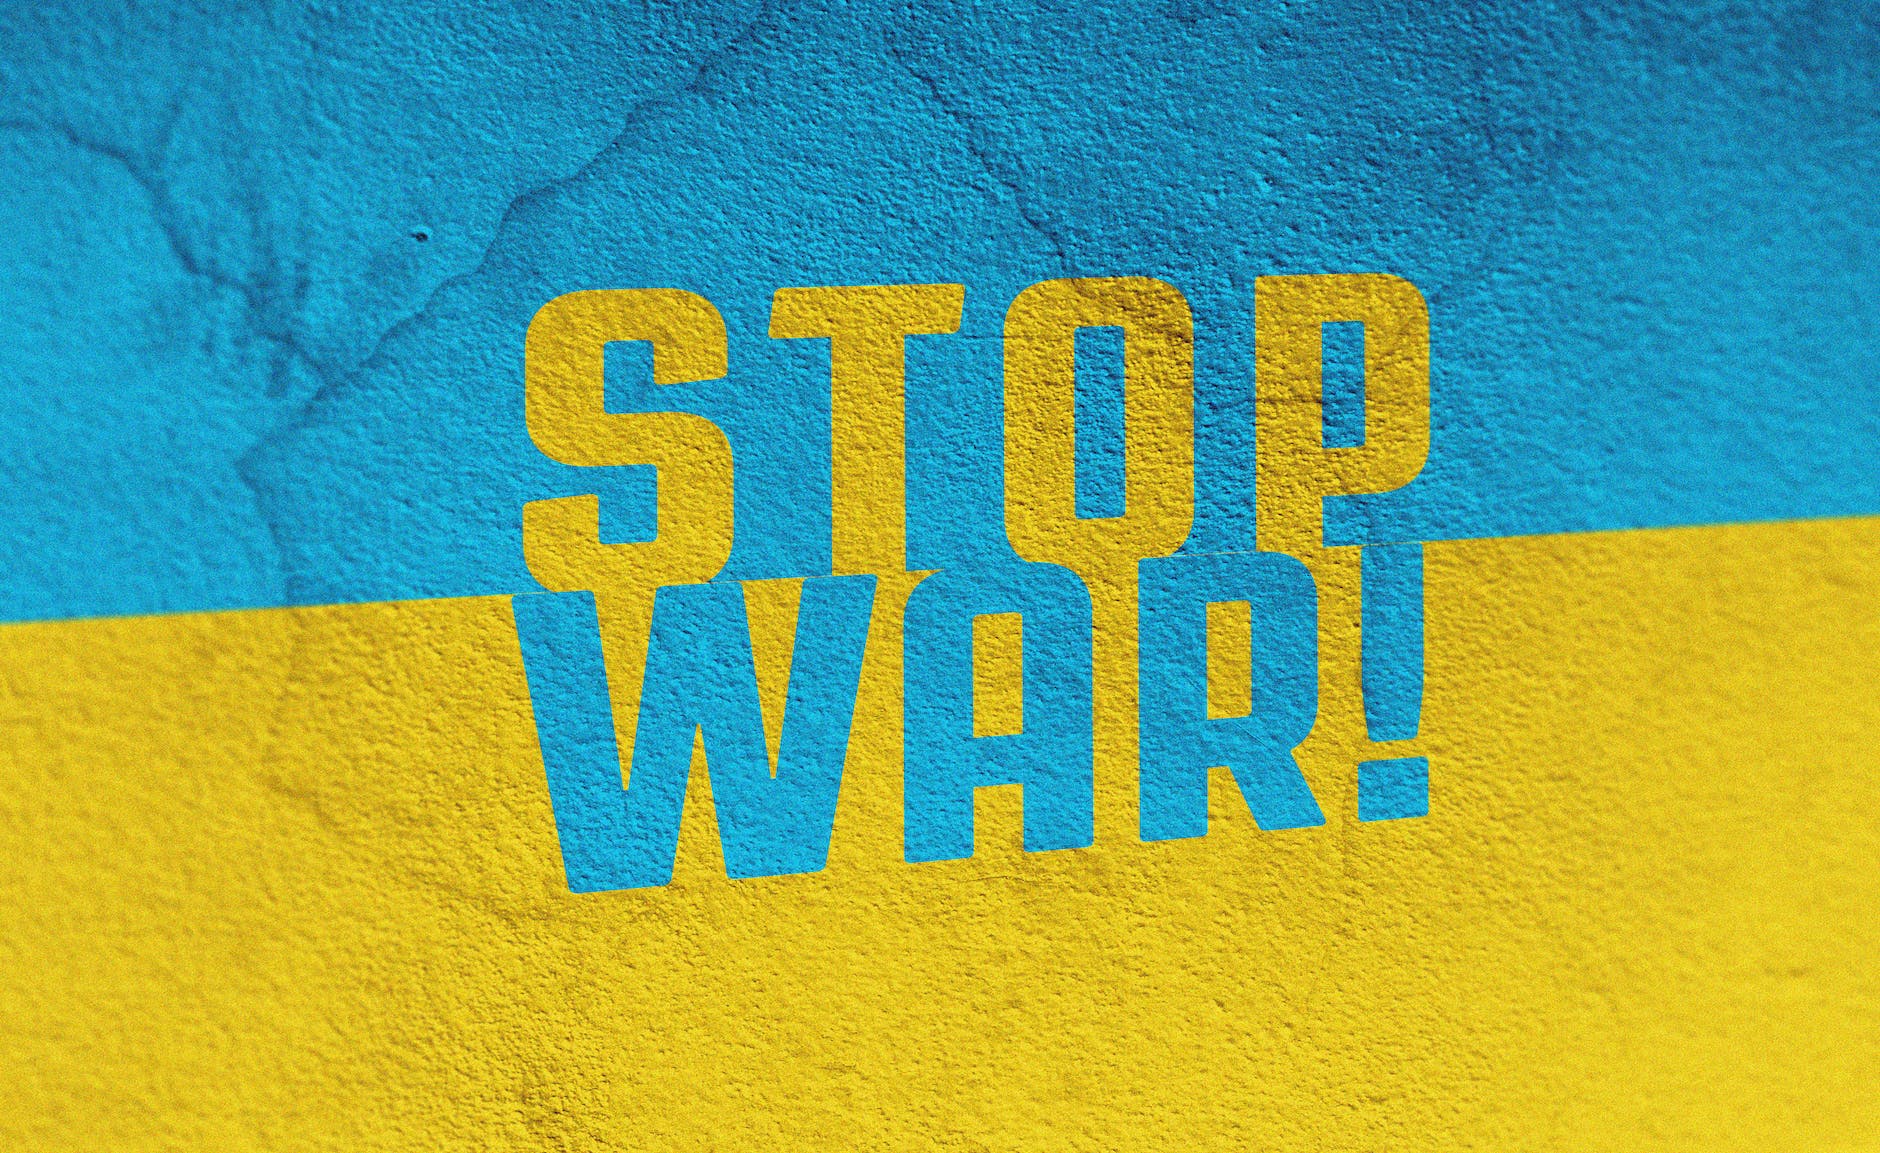 stopw war in ukraine putin is evil